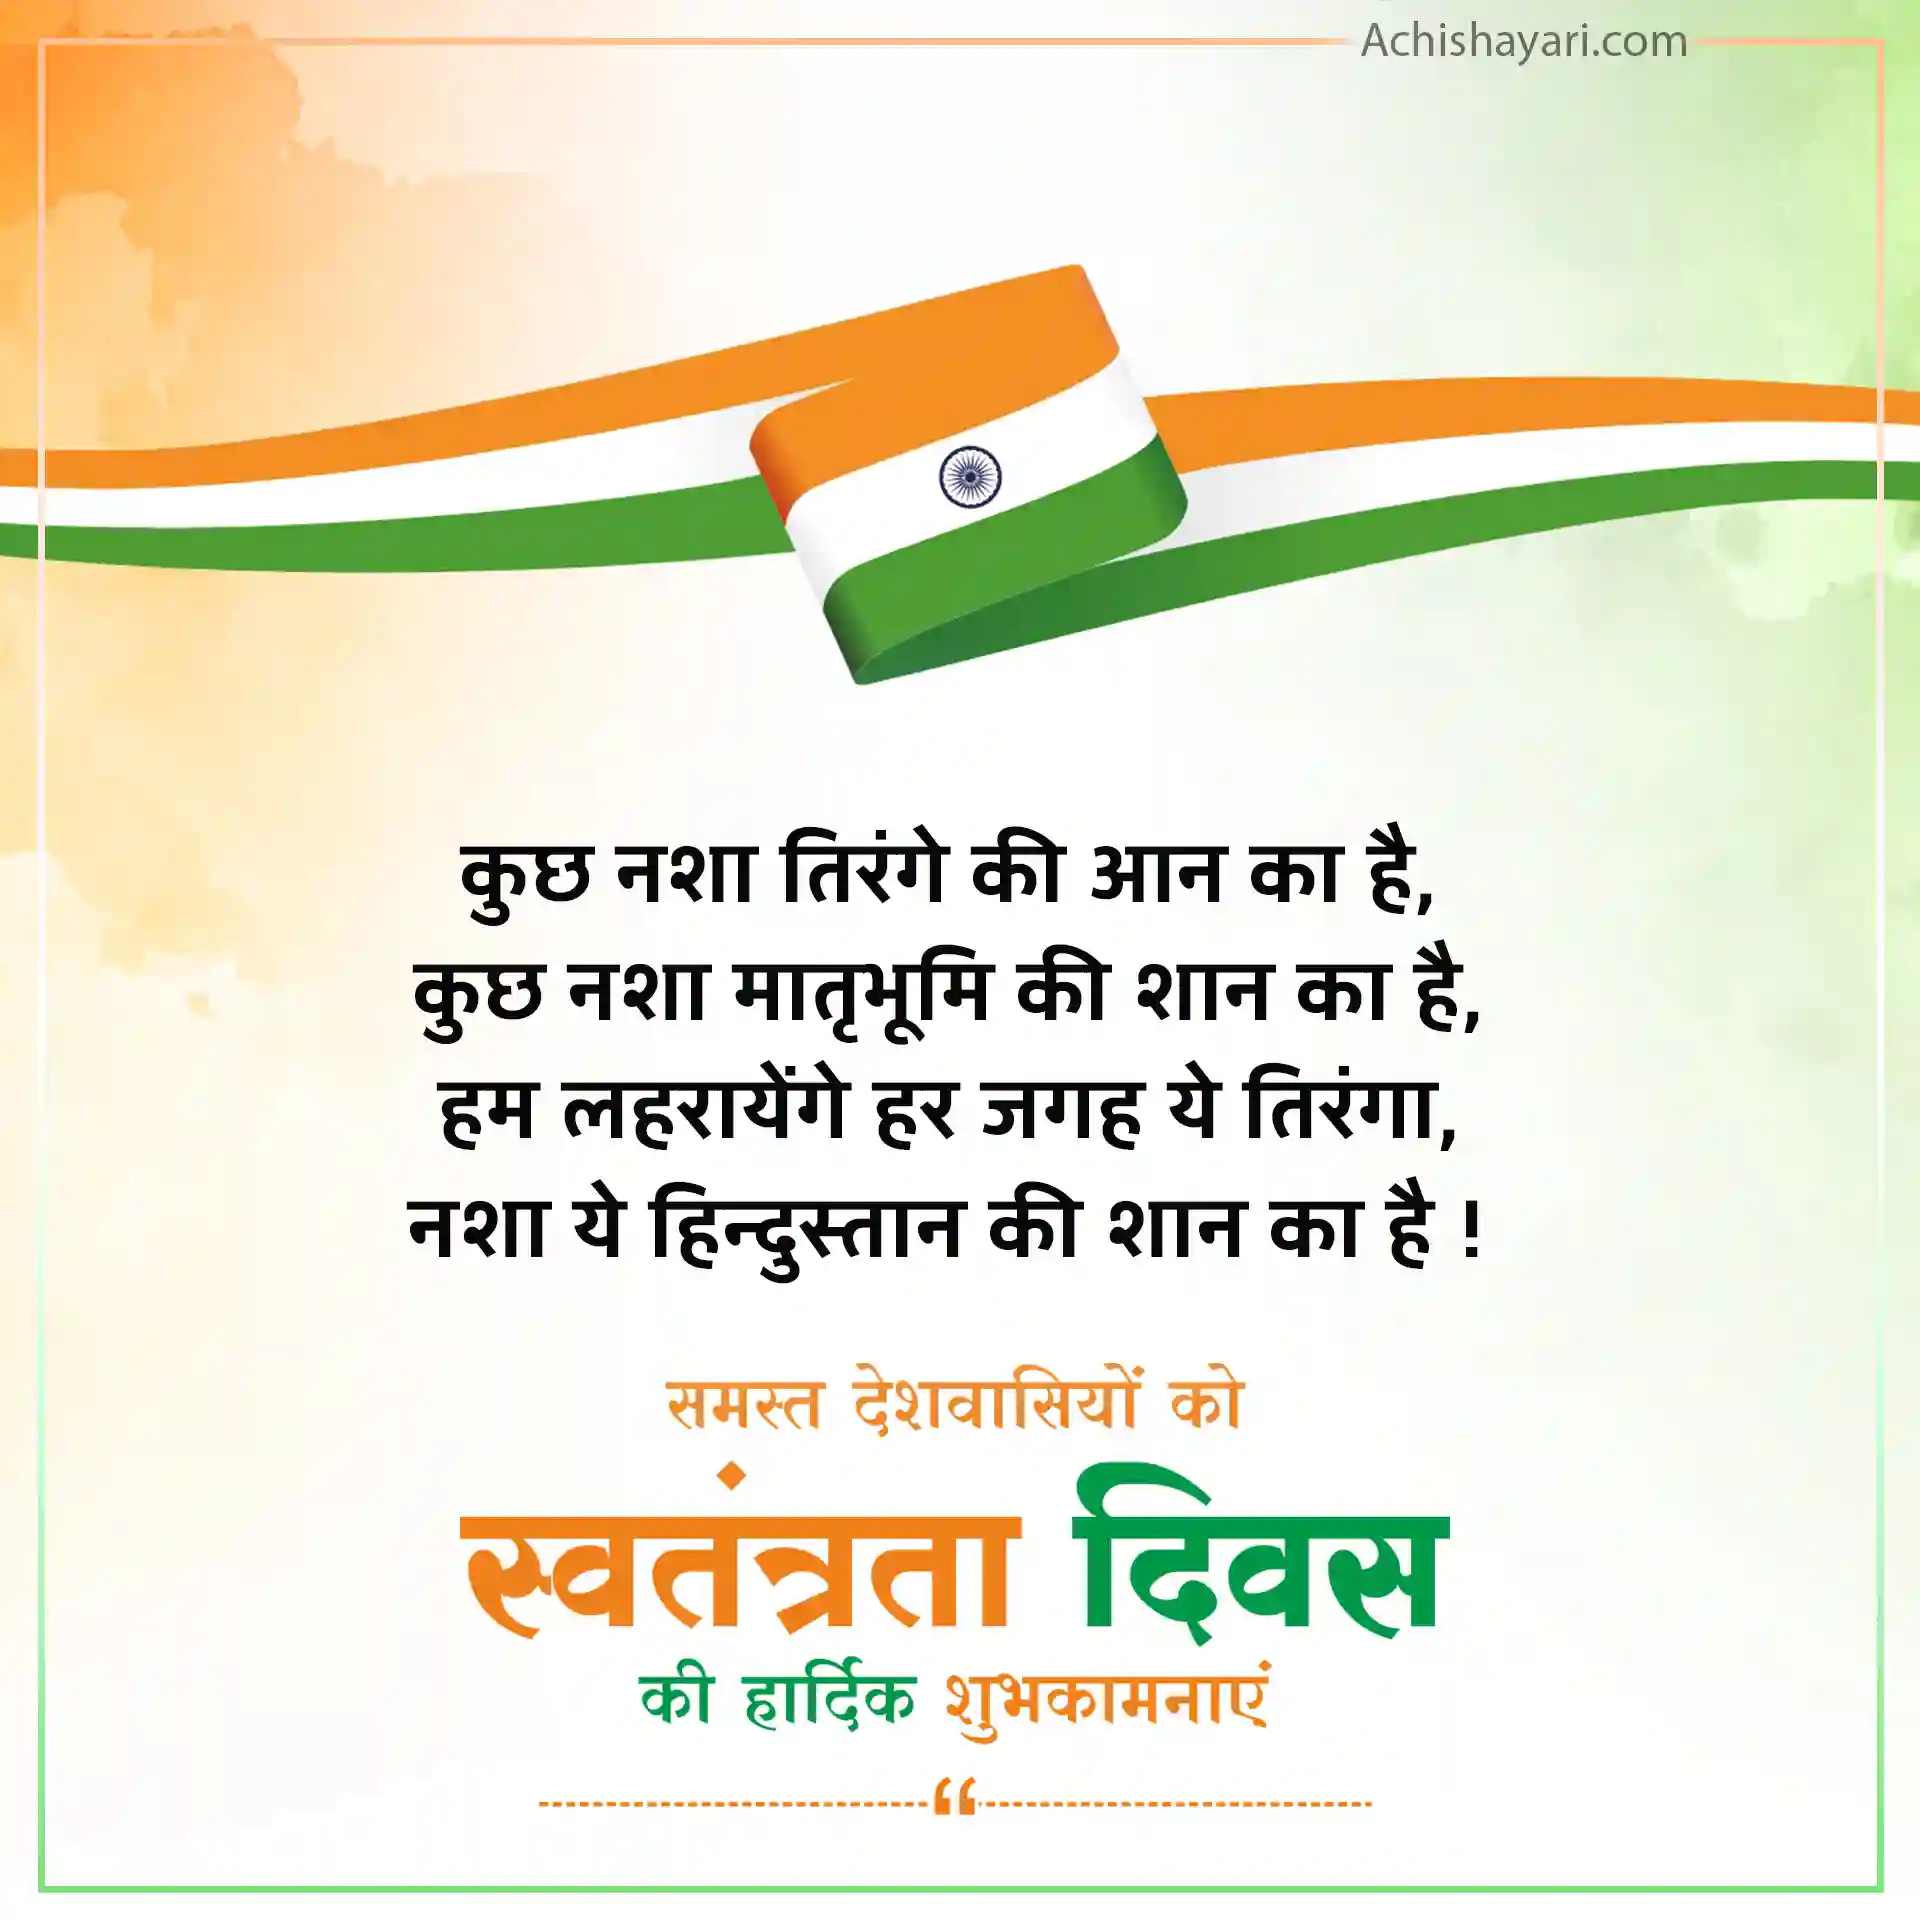 Independence Day Shayari in Hindi